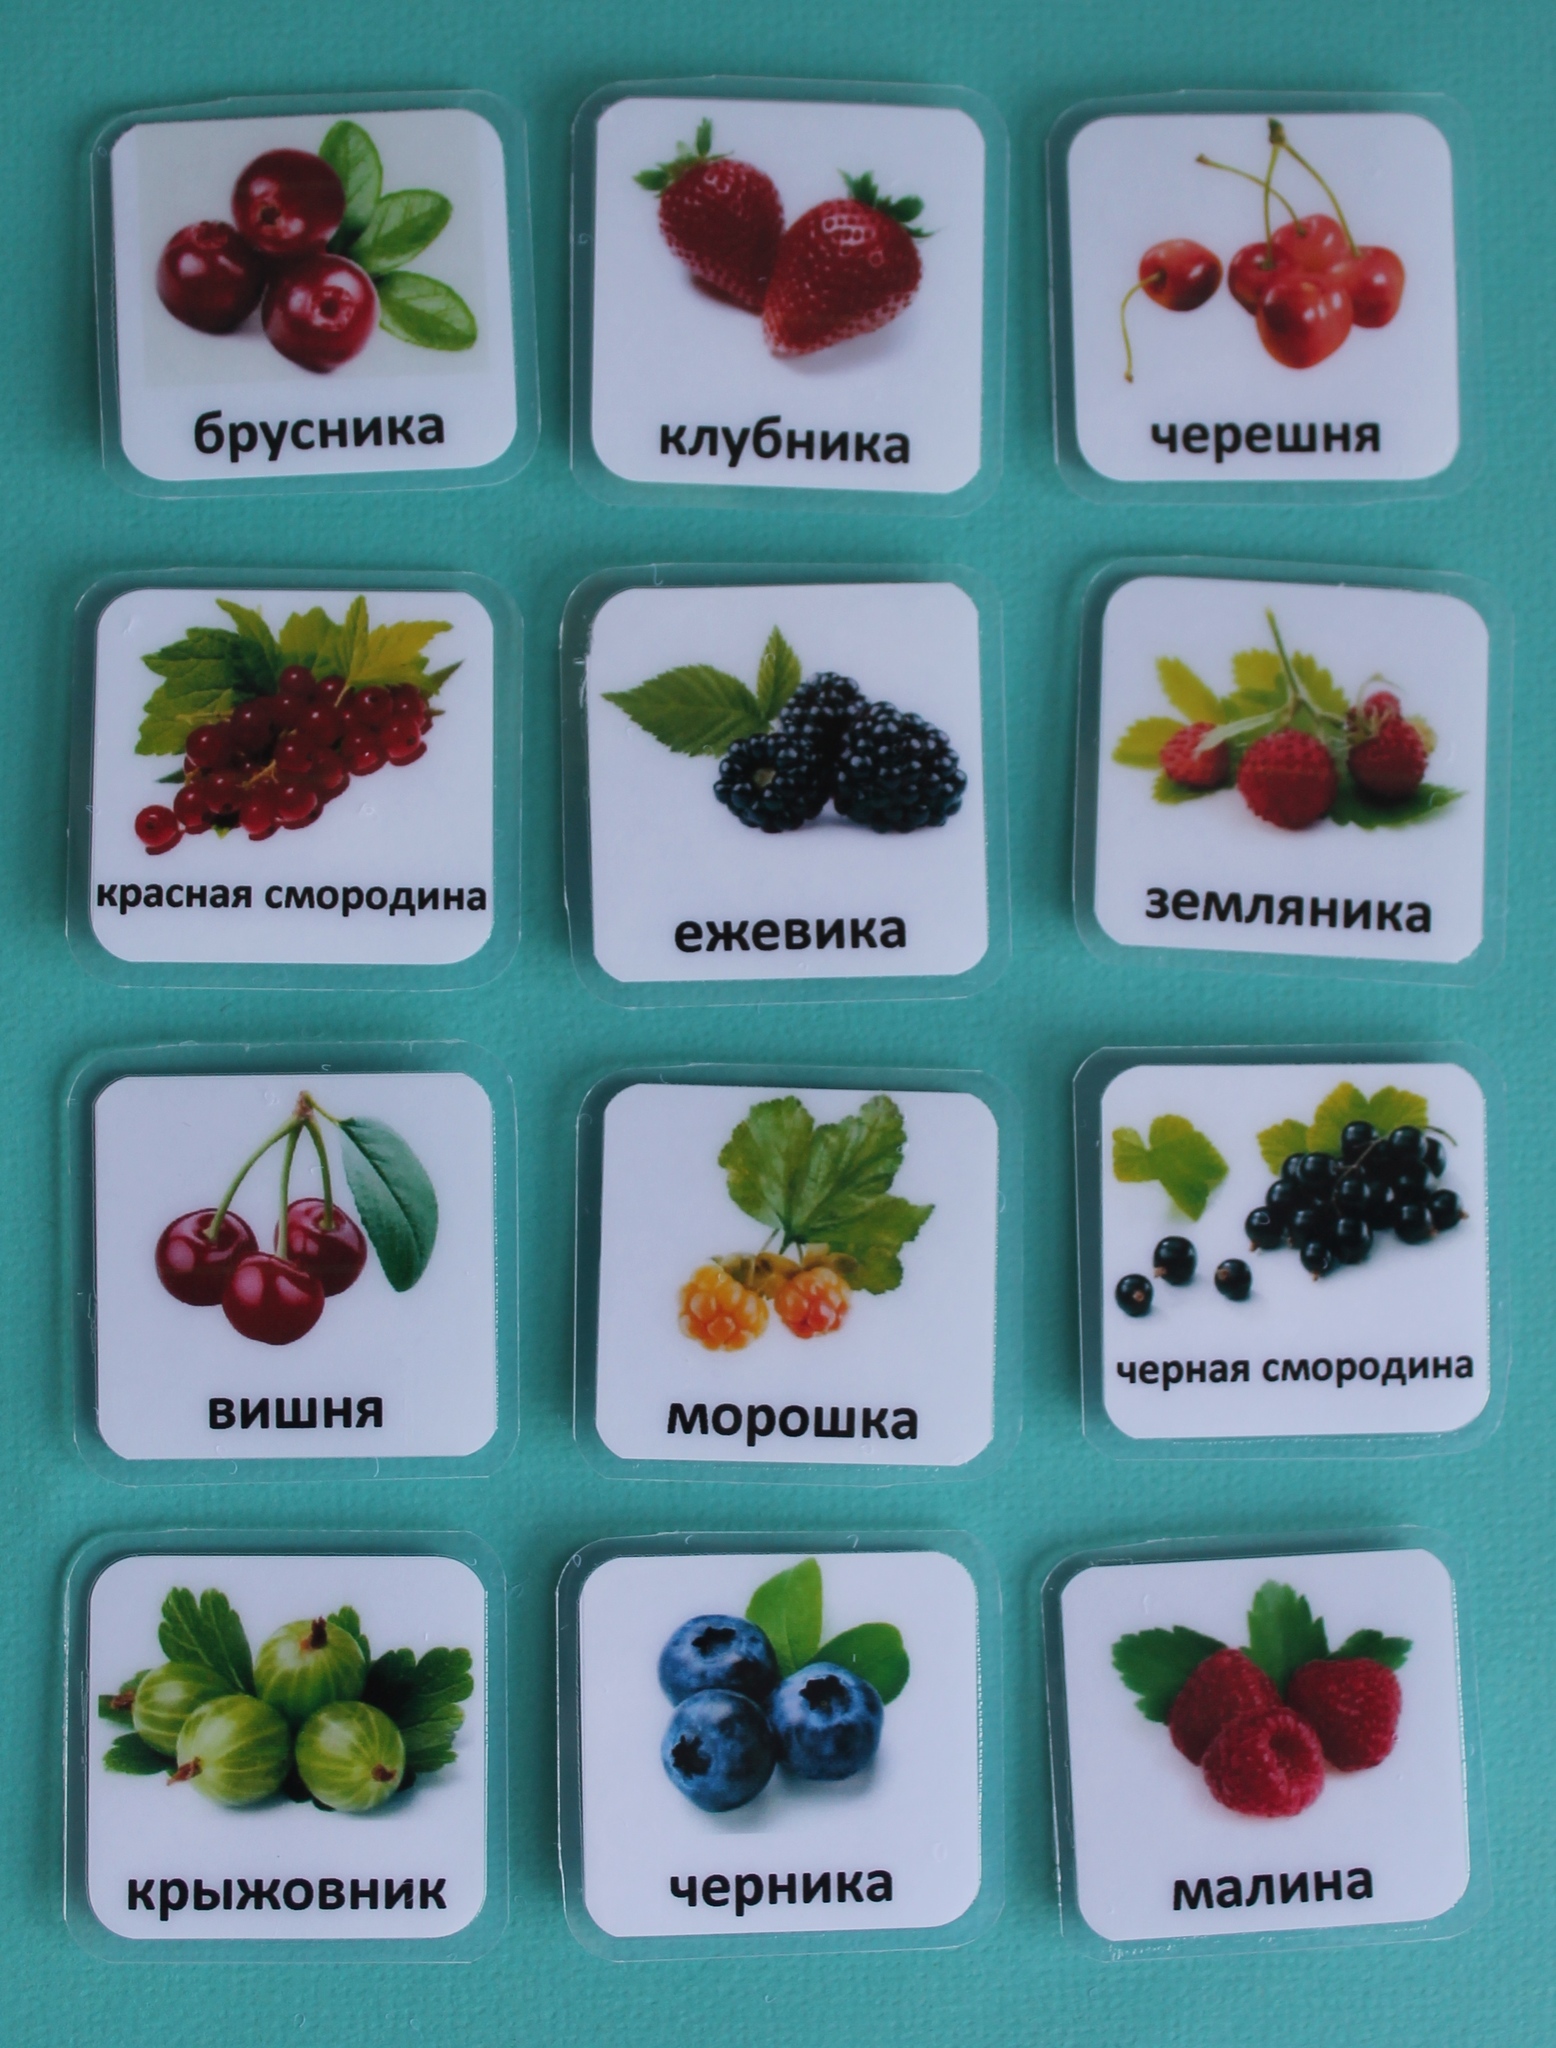 Список ягод – различных видов